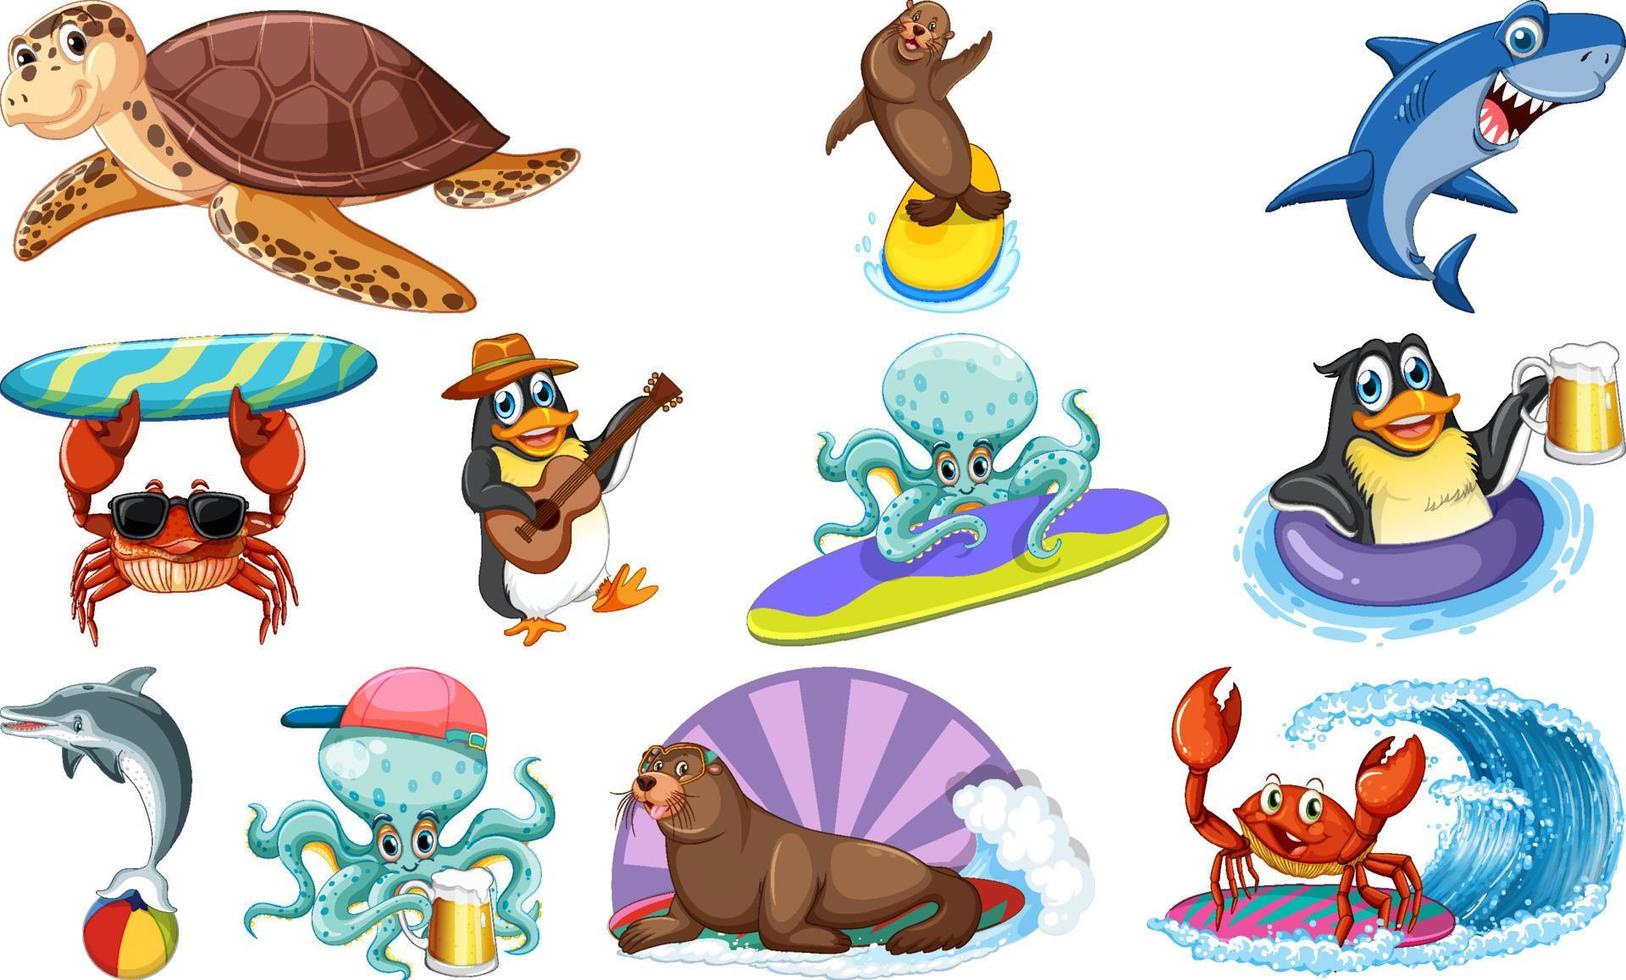 conjunto de varios personajes de dibujos animados de animales marinos vector